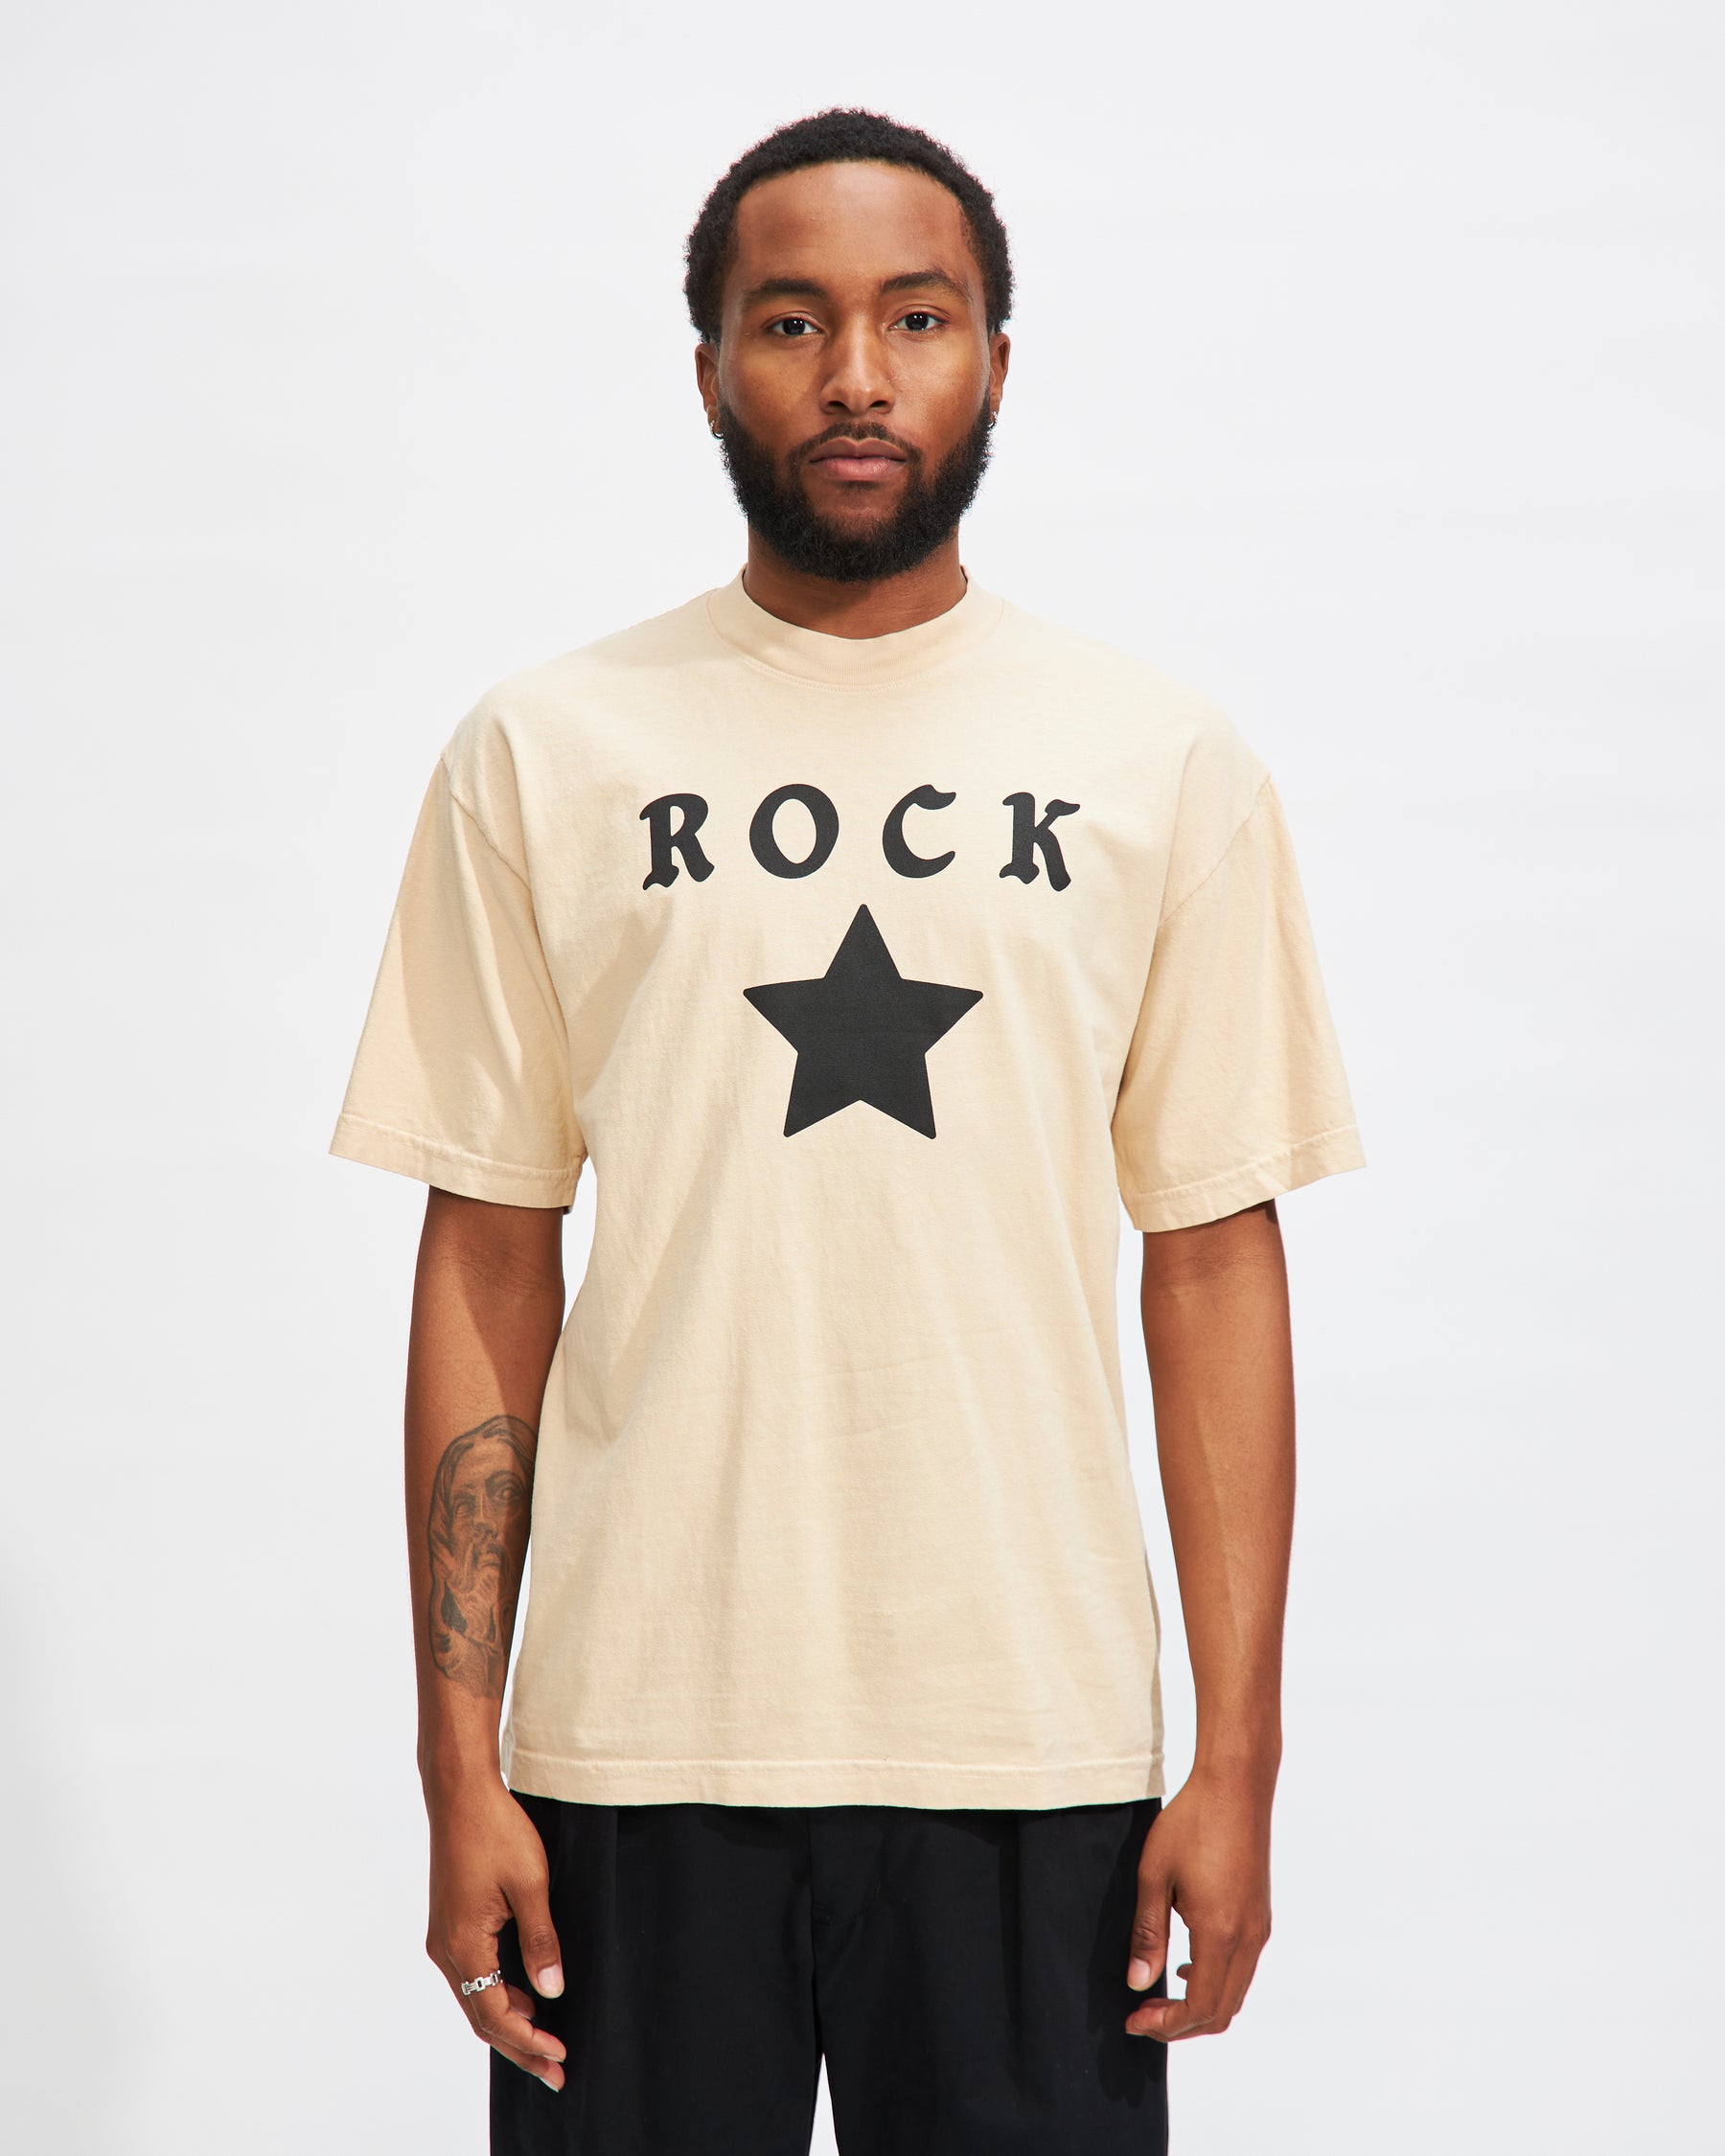 Rockstar T-Shirt in Tan